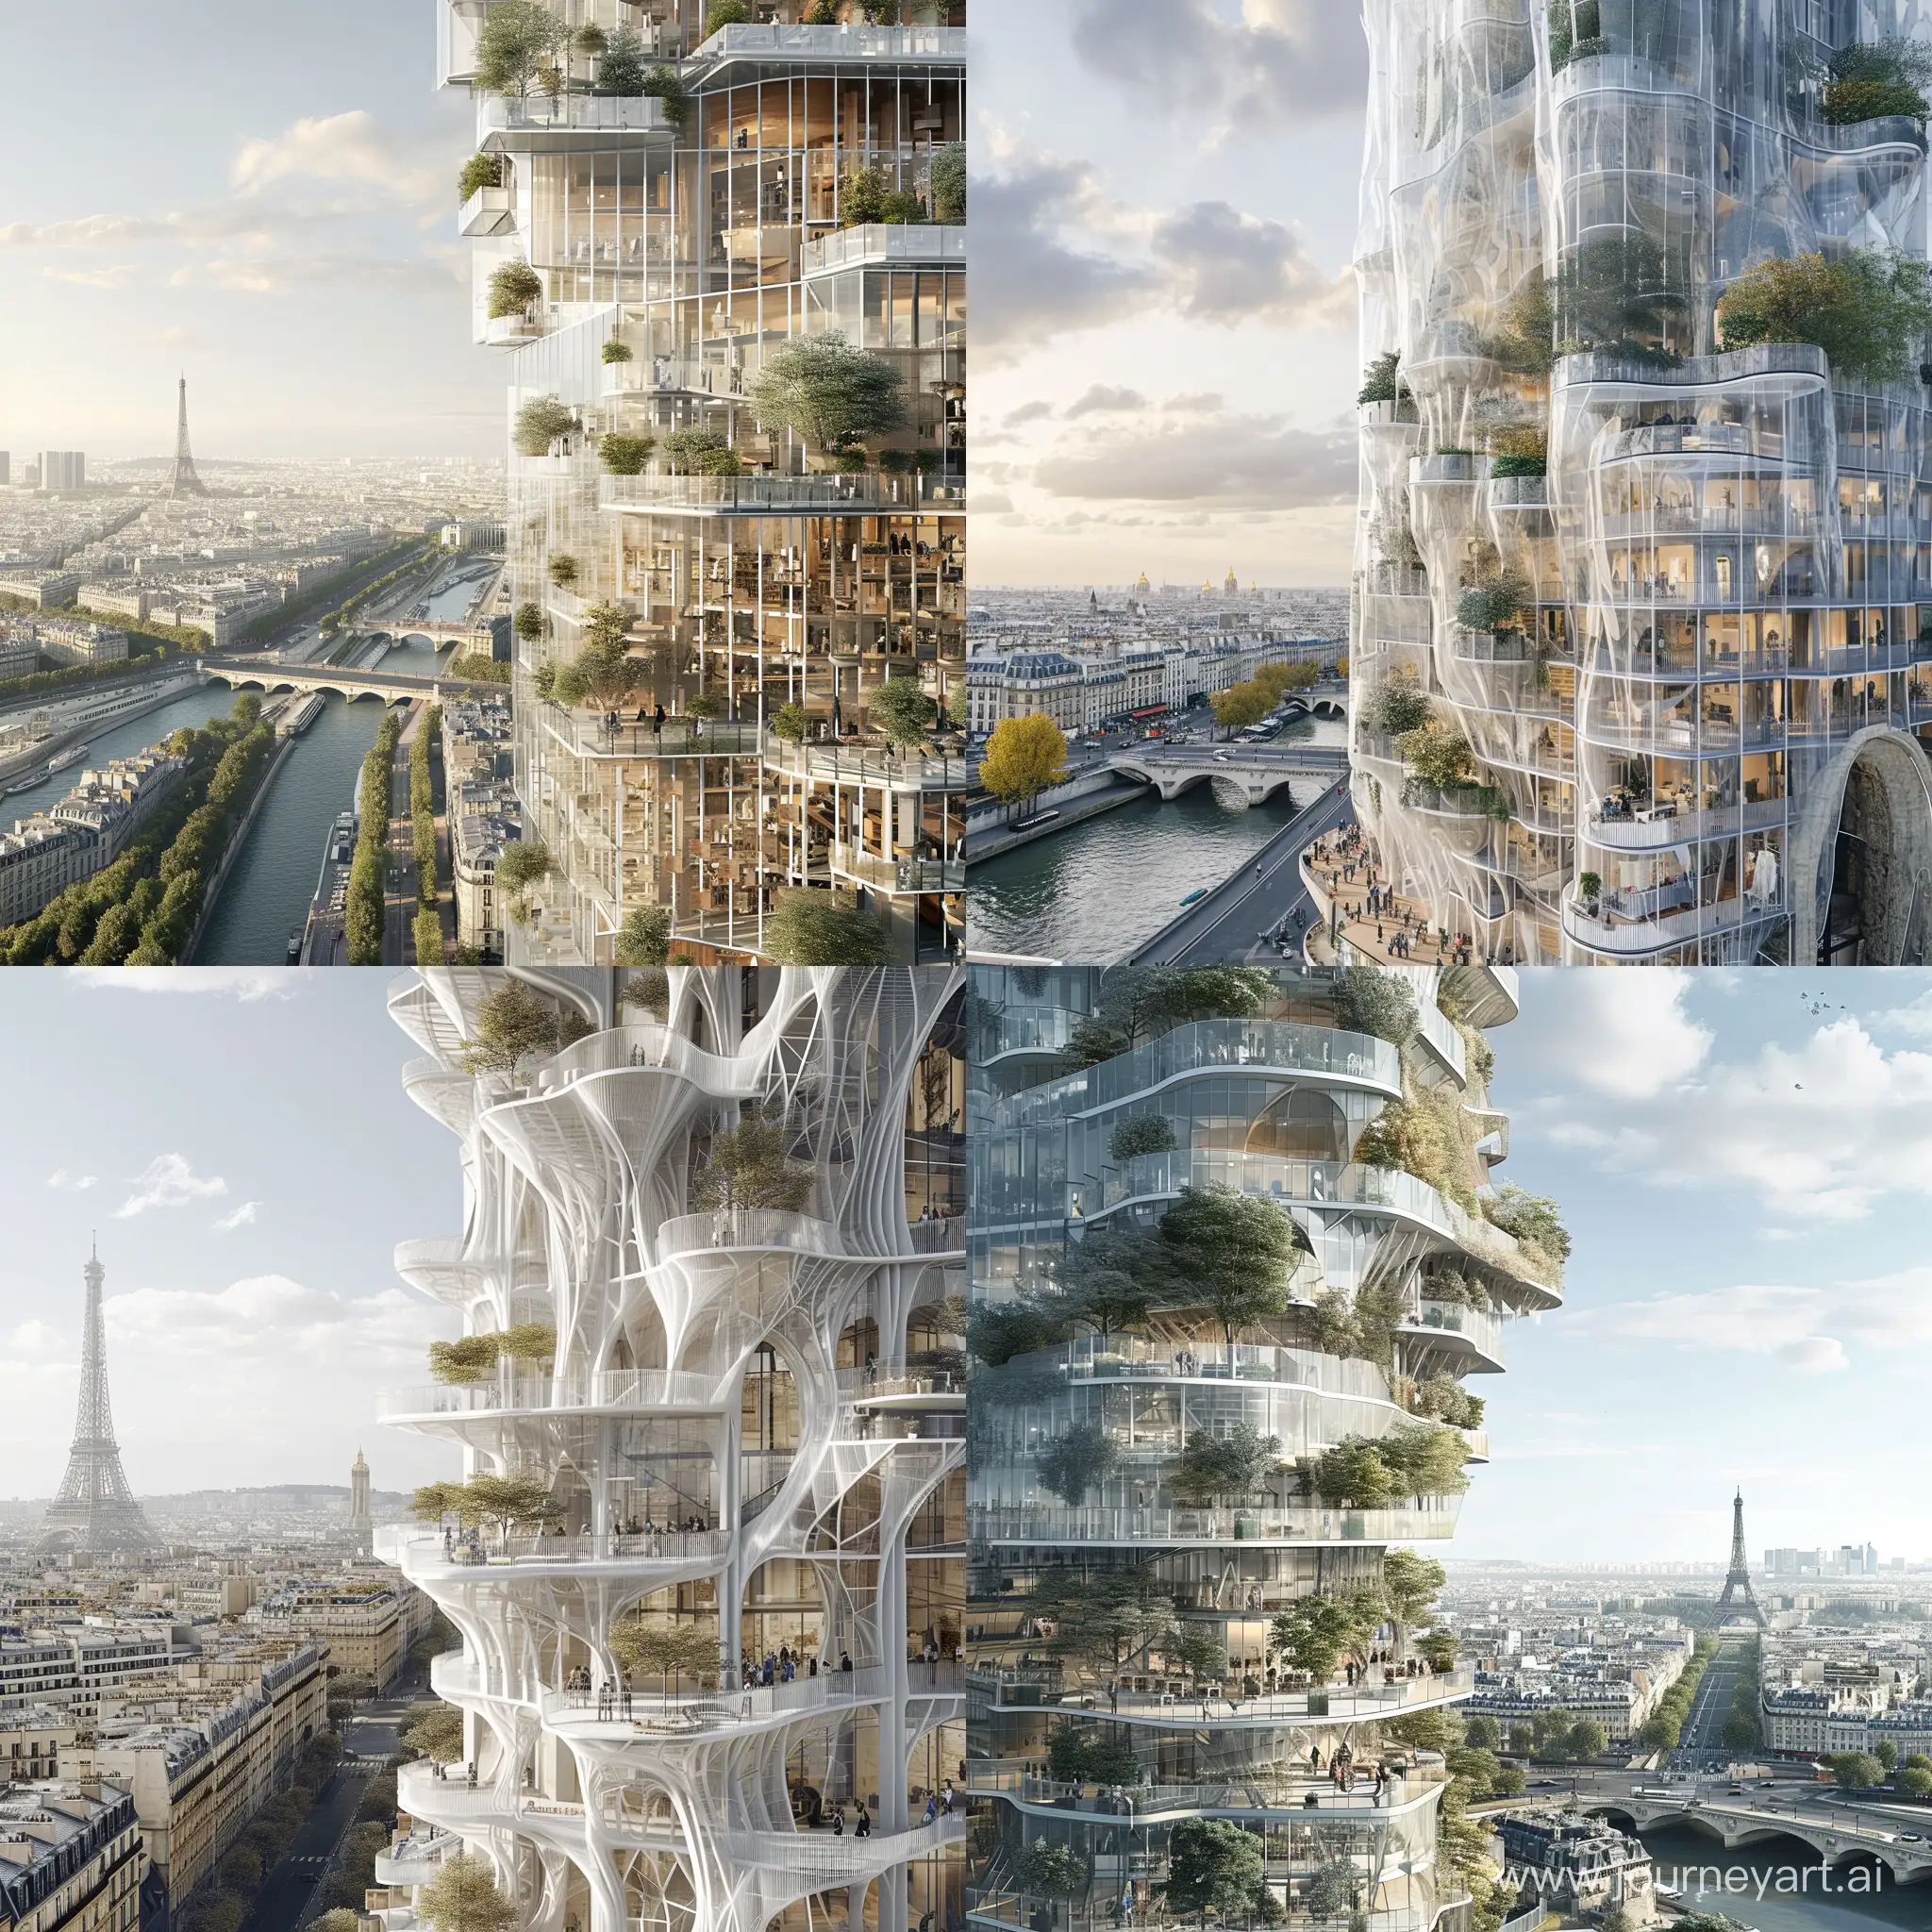 Rascacielos Cultural en París, con una fachada paramétrica que refleja la historia y la cultura de la ciudad. Incorporación de espacios culturales, galerías de arte y terrazas con vistas a los icónicos monumentos parisinos